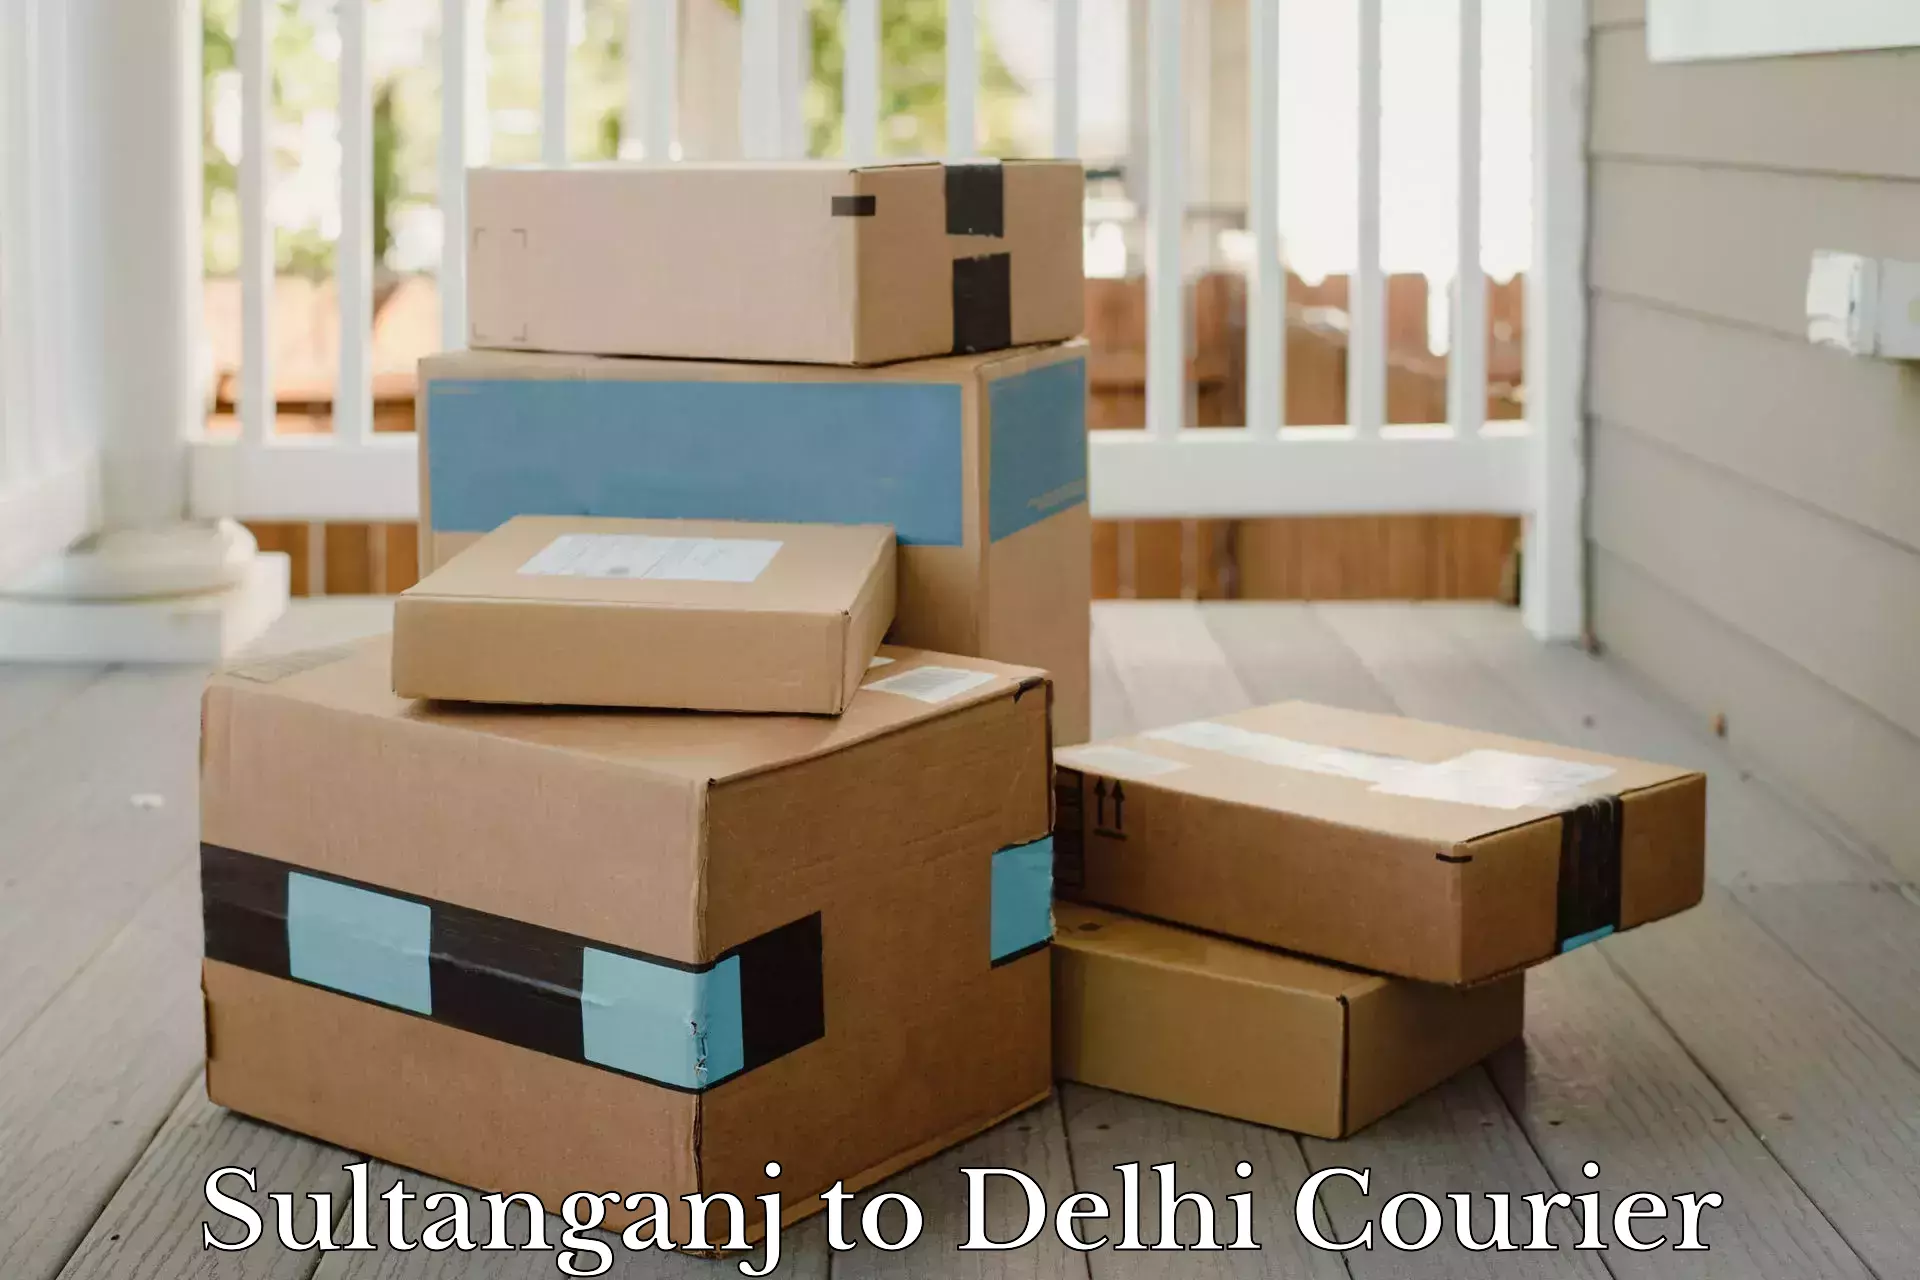 Courier rate comparison in Sultanganj to Jamia Millia Islamia New Delhi